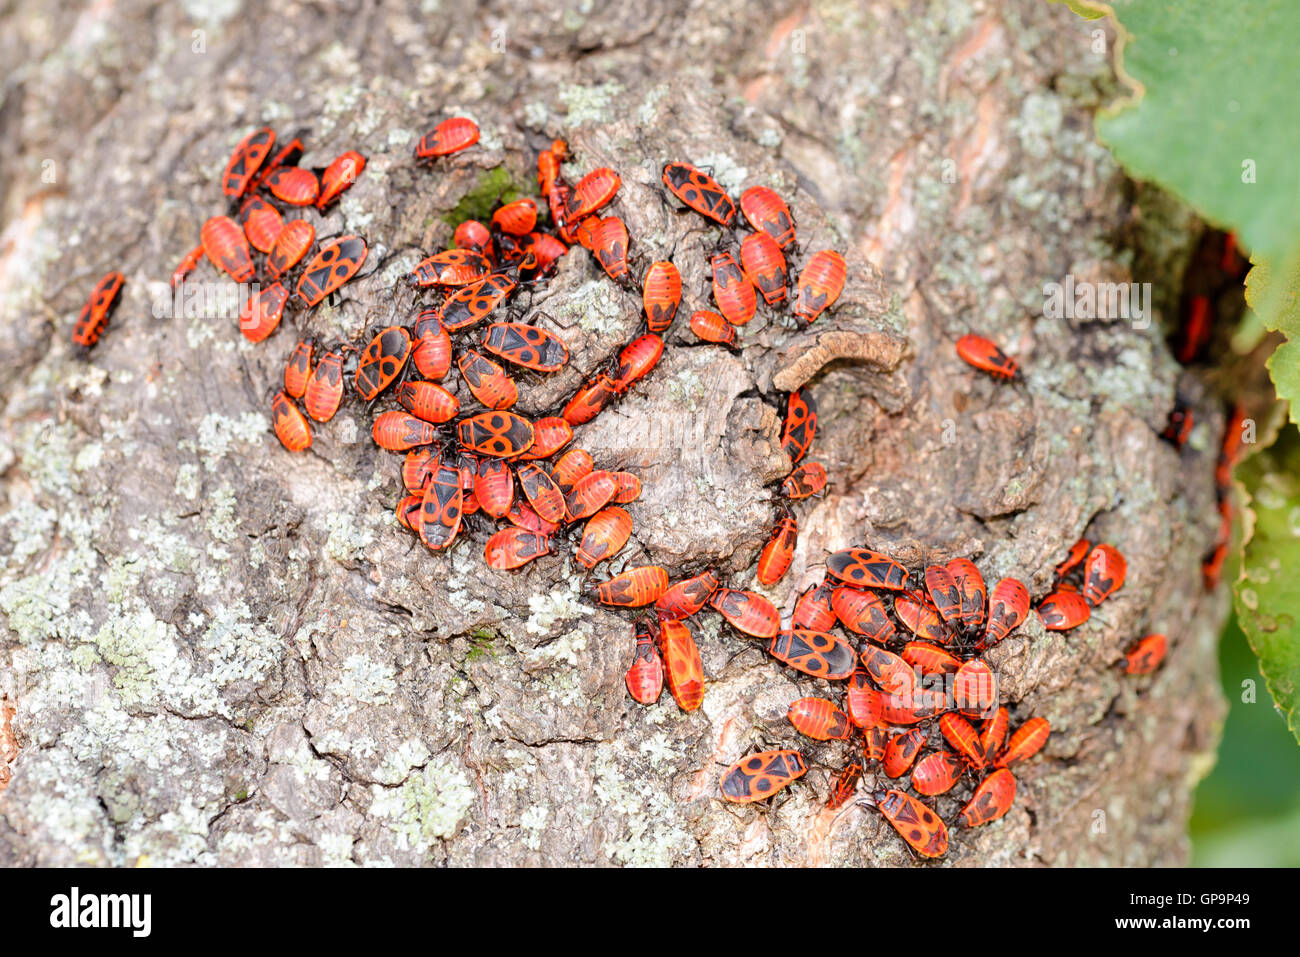 Colonie de noir et rouge Firebug ou Pyrrhocoris apterus, les adultes et les nymphes, sur un tronc d'arbre Banque D'Images